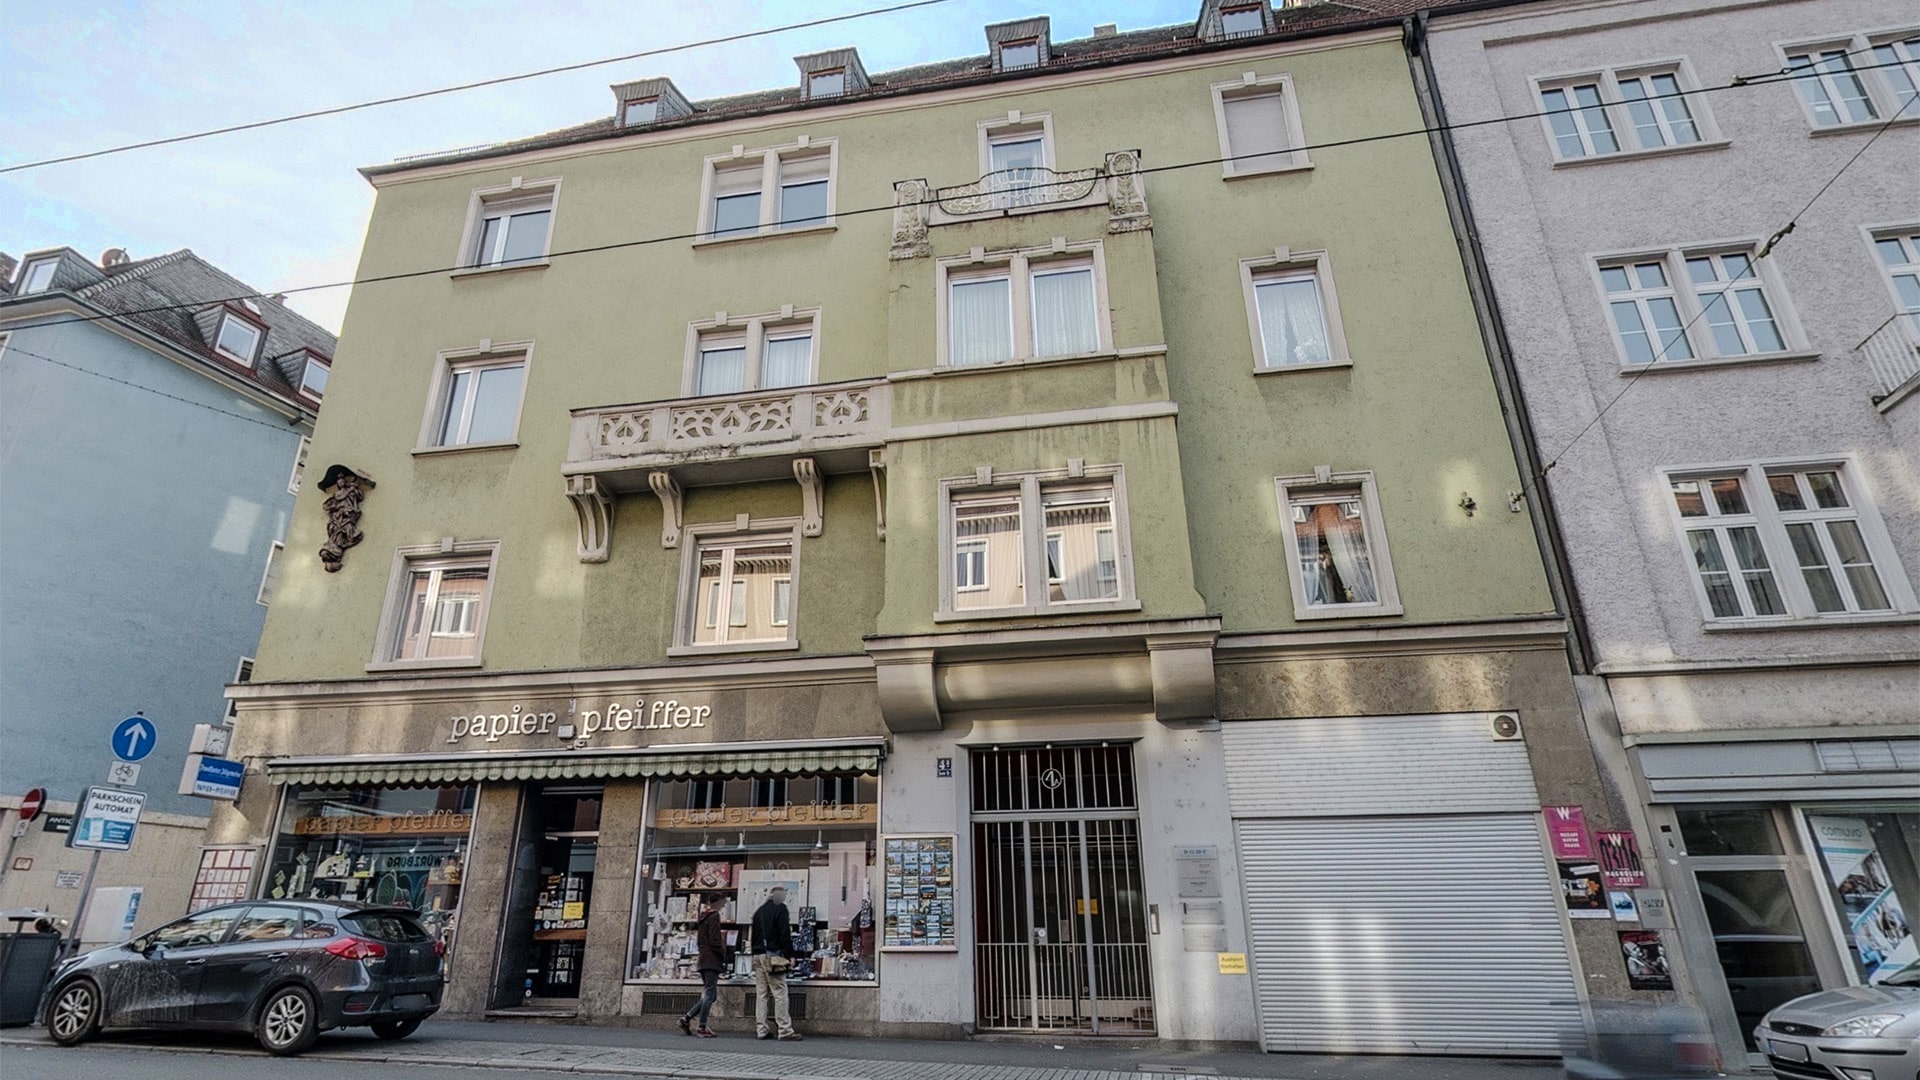 Biuro tłumaczeń w Würzburgu